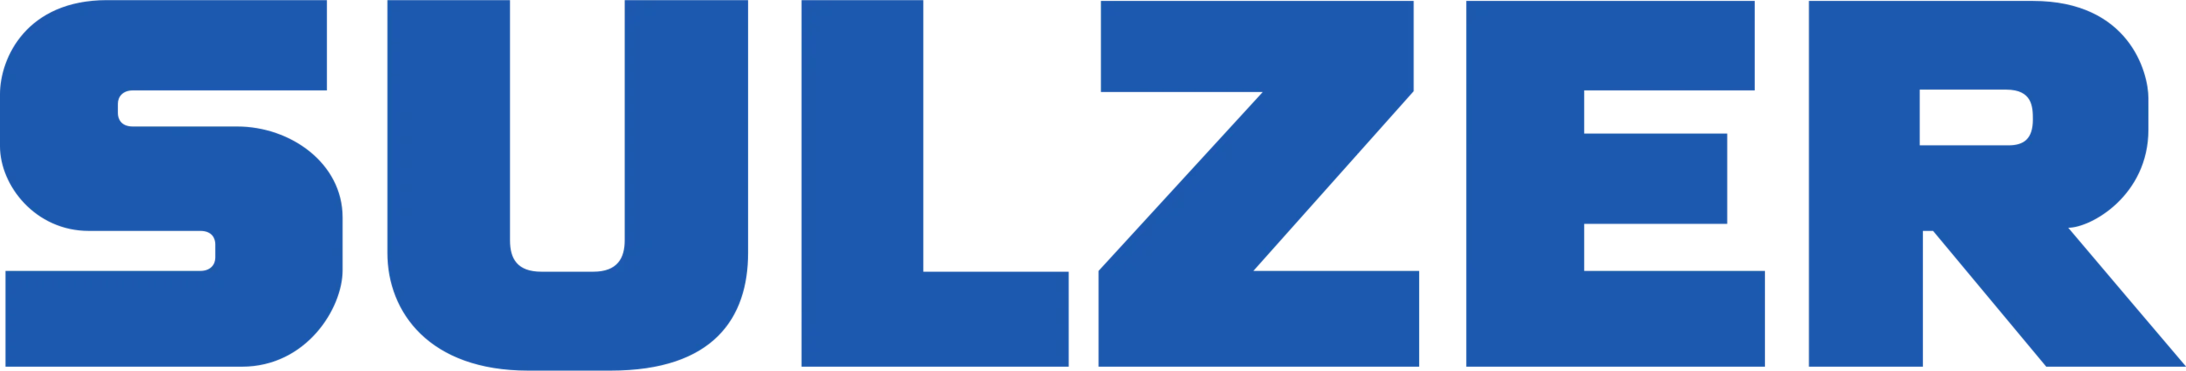 Sulzer AG Logo